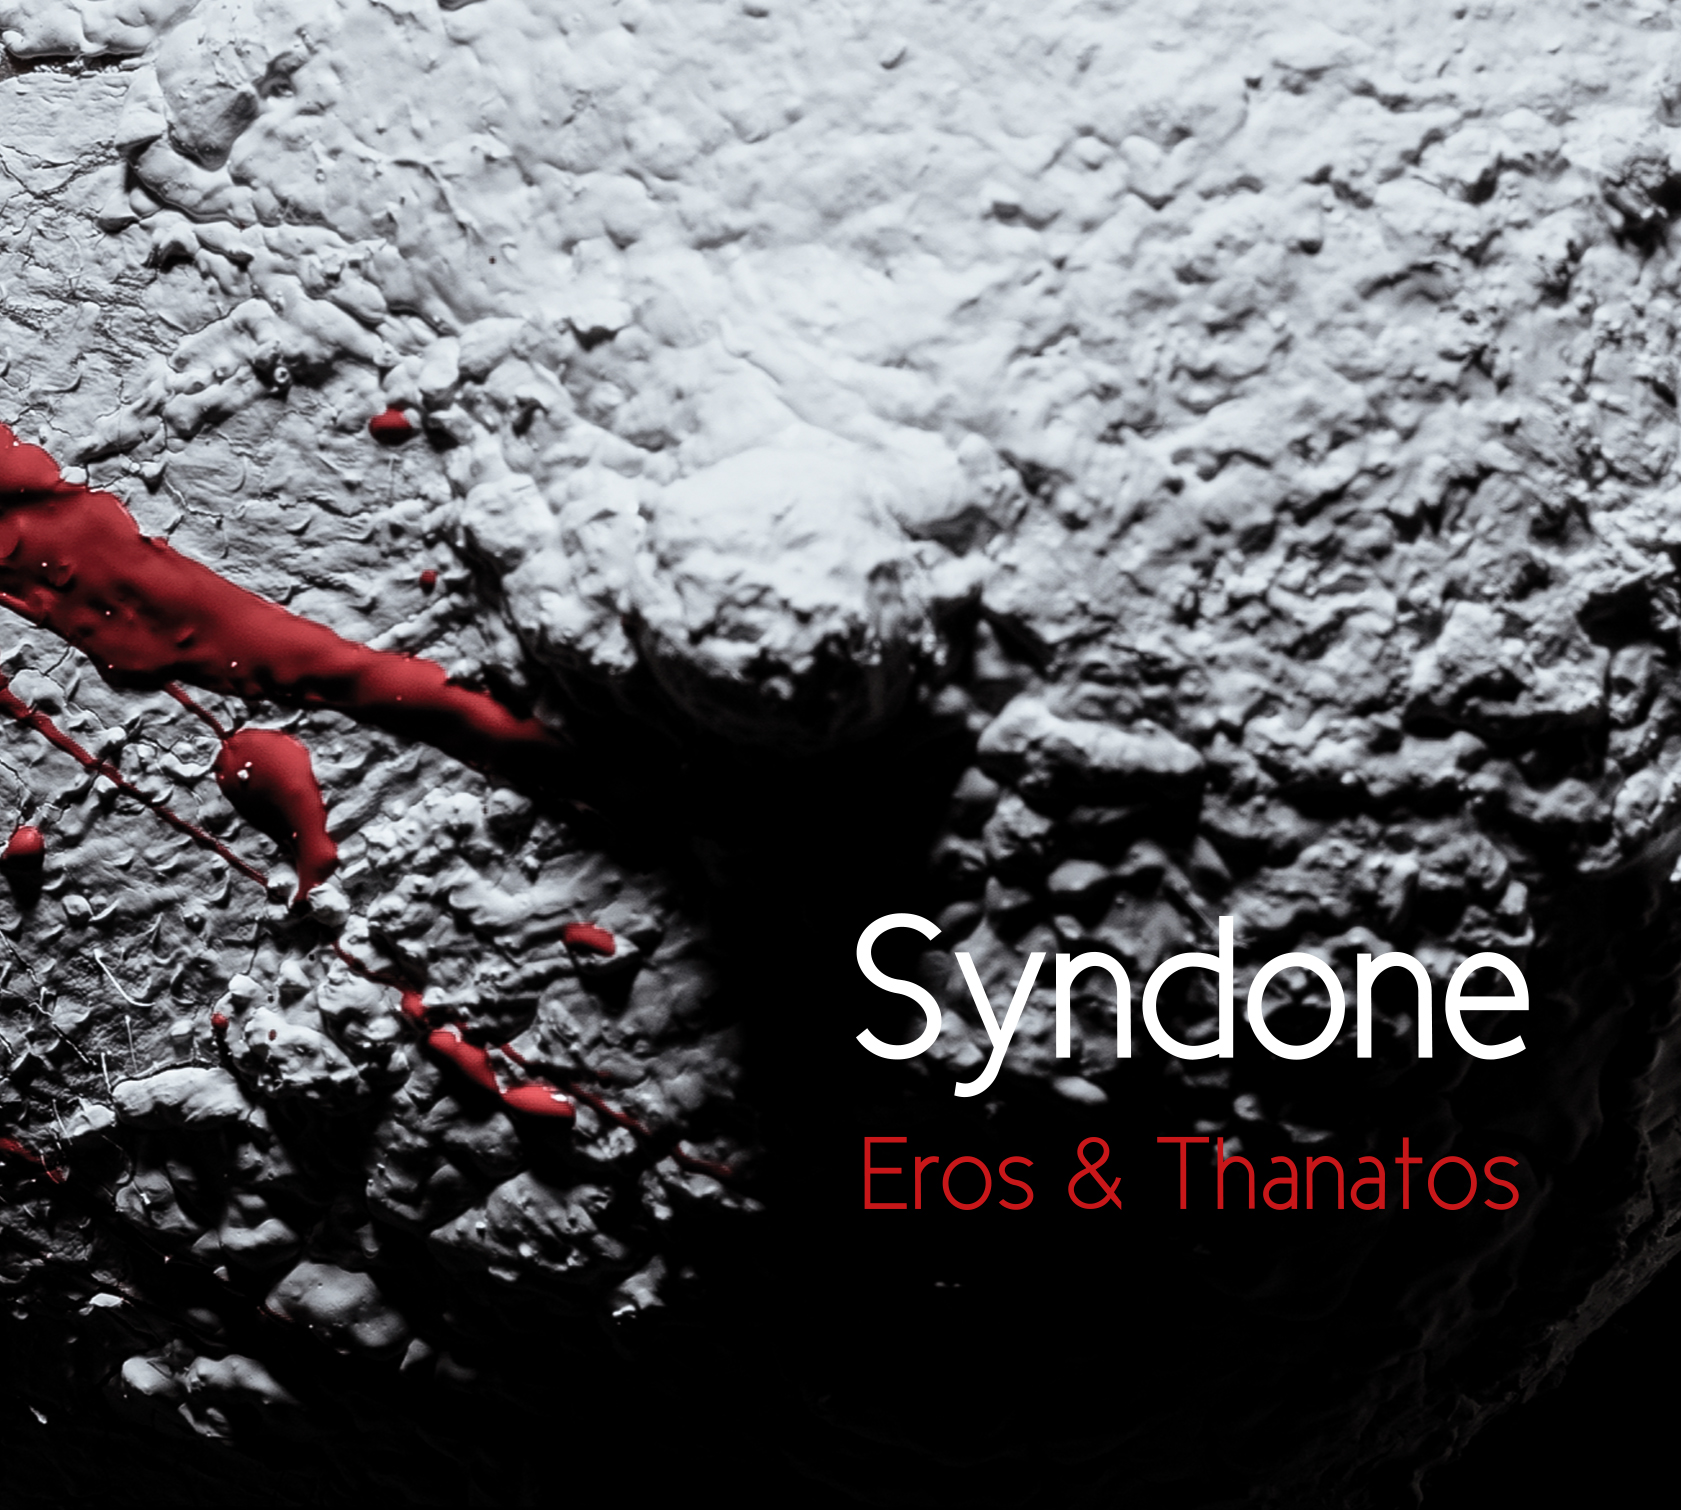 SYNDONE - Eros & Thanatos CD Digipack